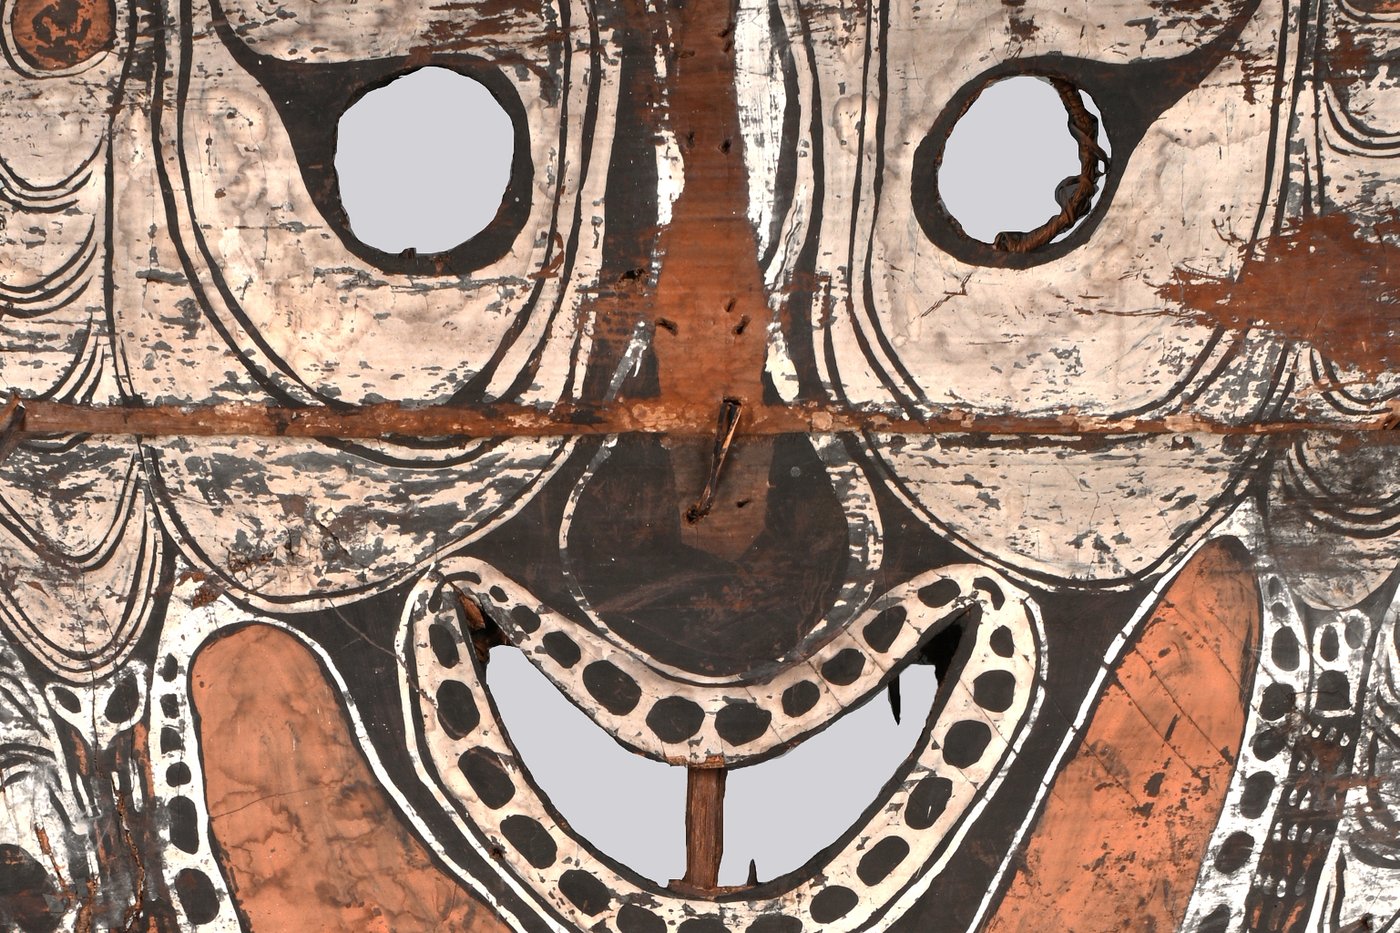 Fotografie, Nahaufnahme einer afrikanischen Holzmaske mit schwarz-weißen Mustern die die Gesichtszüge umranden